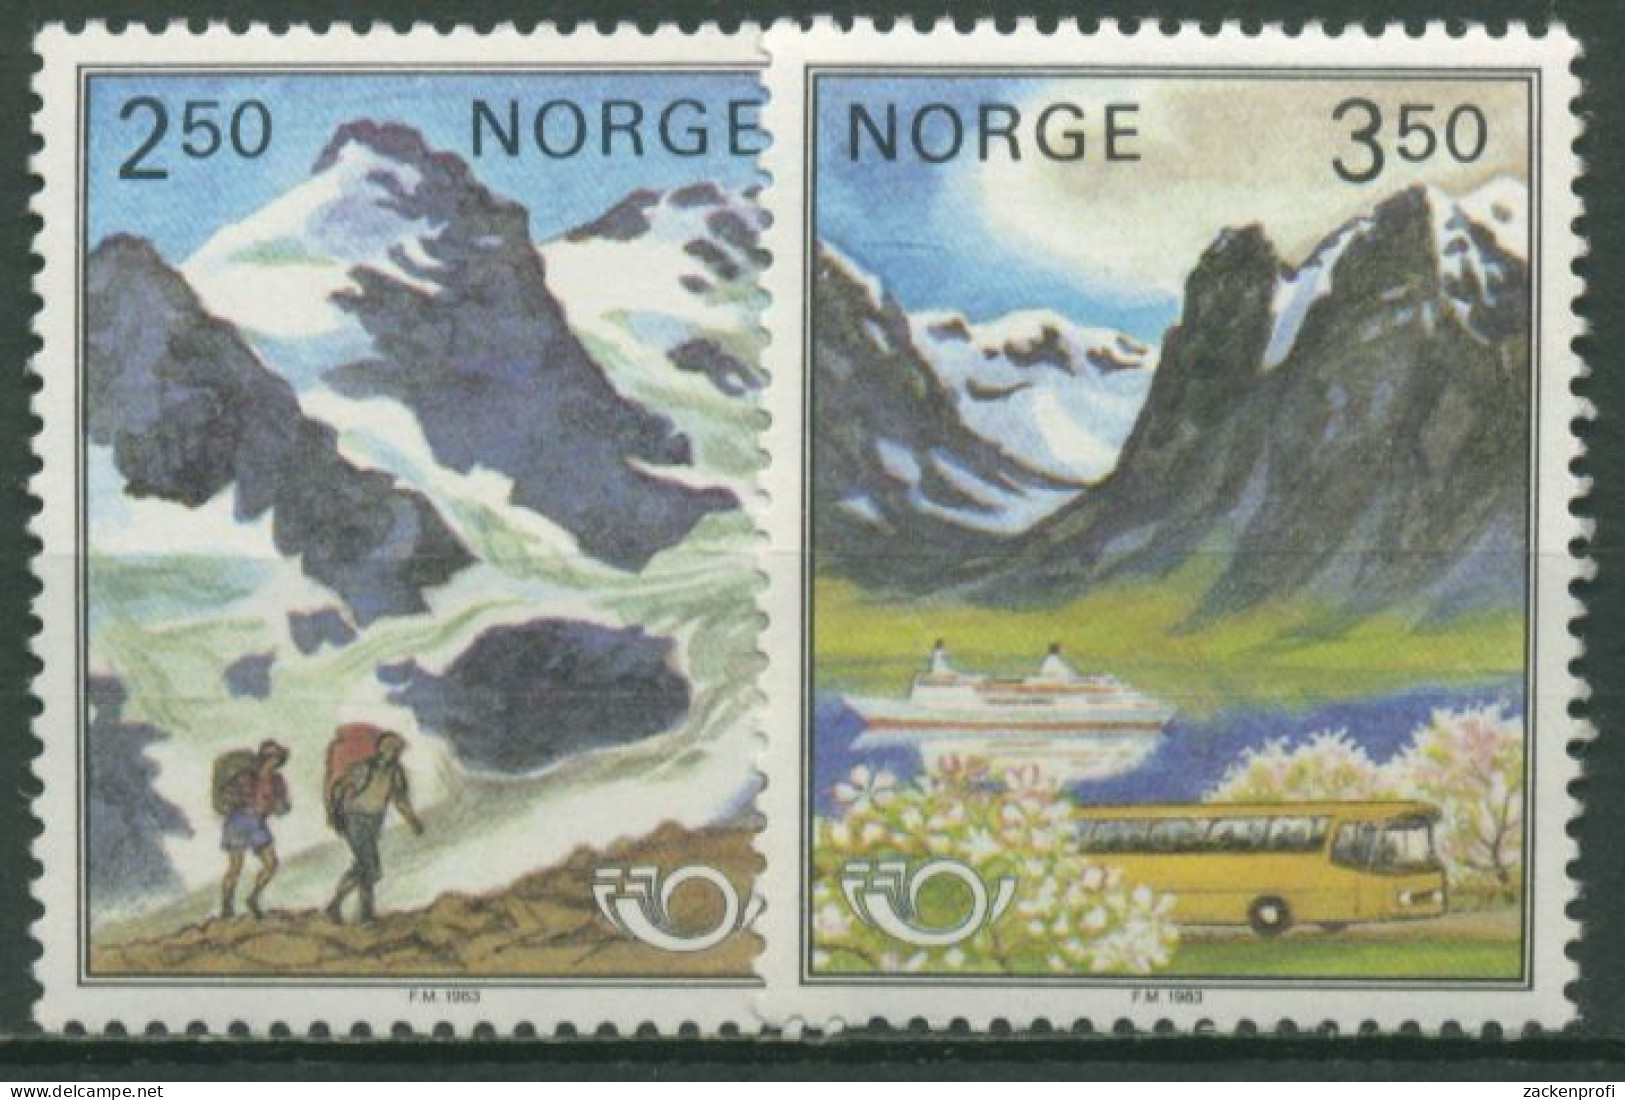 Norwegen 1983 NORDEN: Tourismus In Skandinavien 881/82 Postfrisch - Unused Stamps